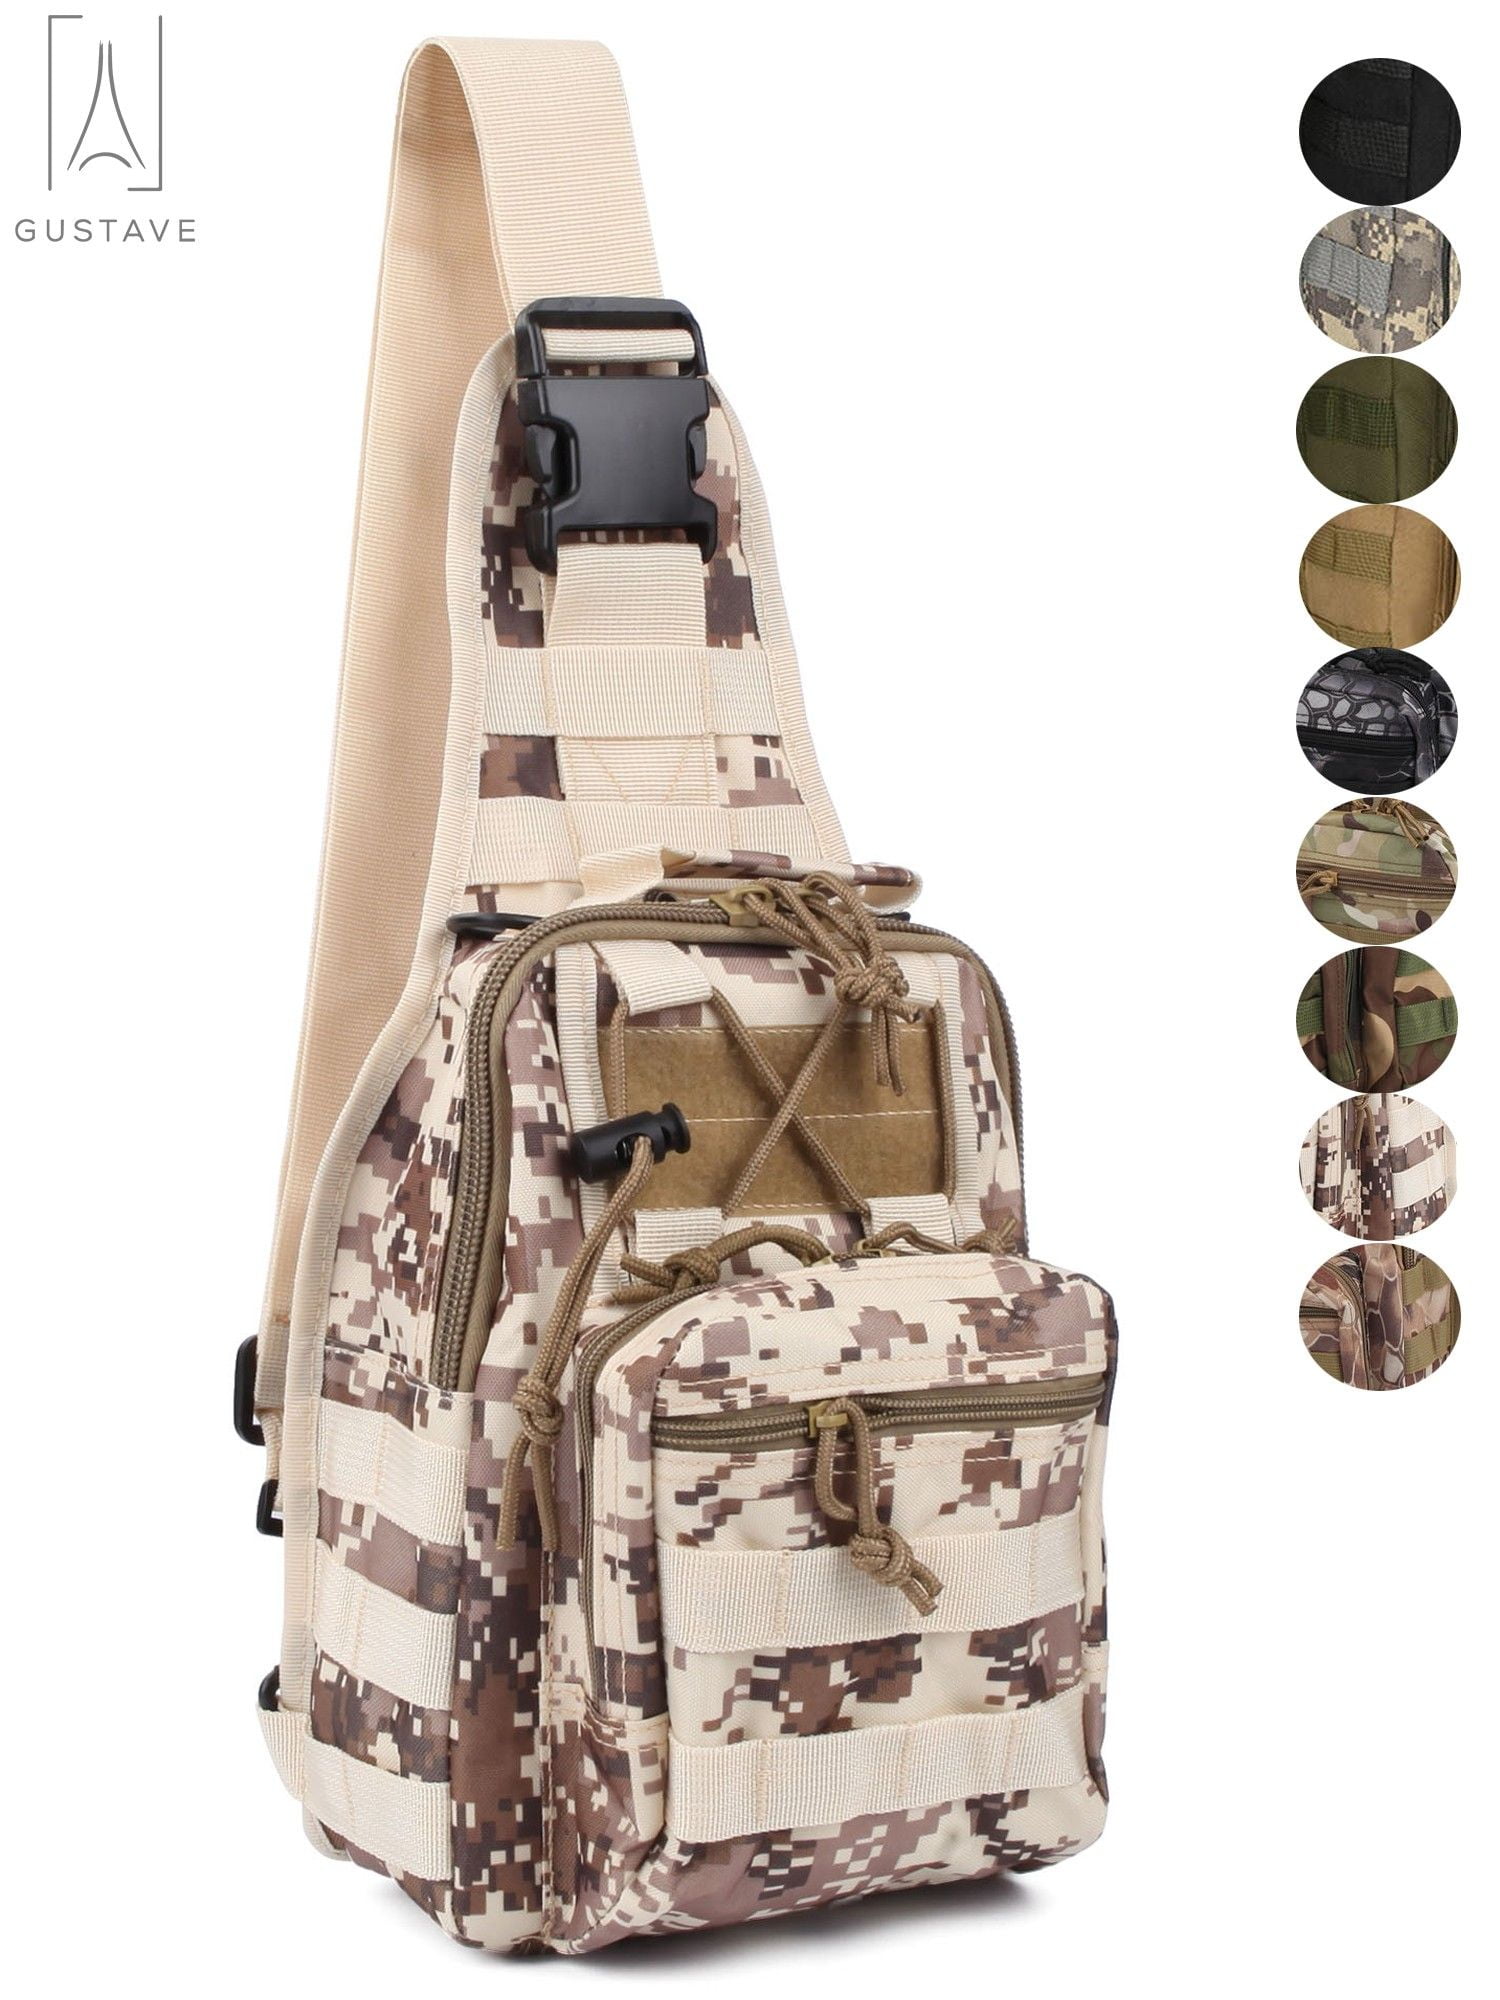 Lumesner Sling Bag Crossbody Backpack with USB Charging Port,Hiking Daypack  Shoulder Bag Chest Bag for Hiking Walking Travel